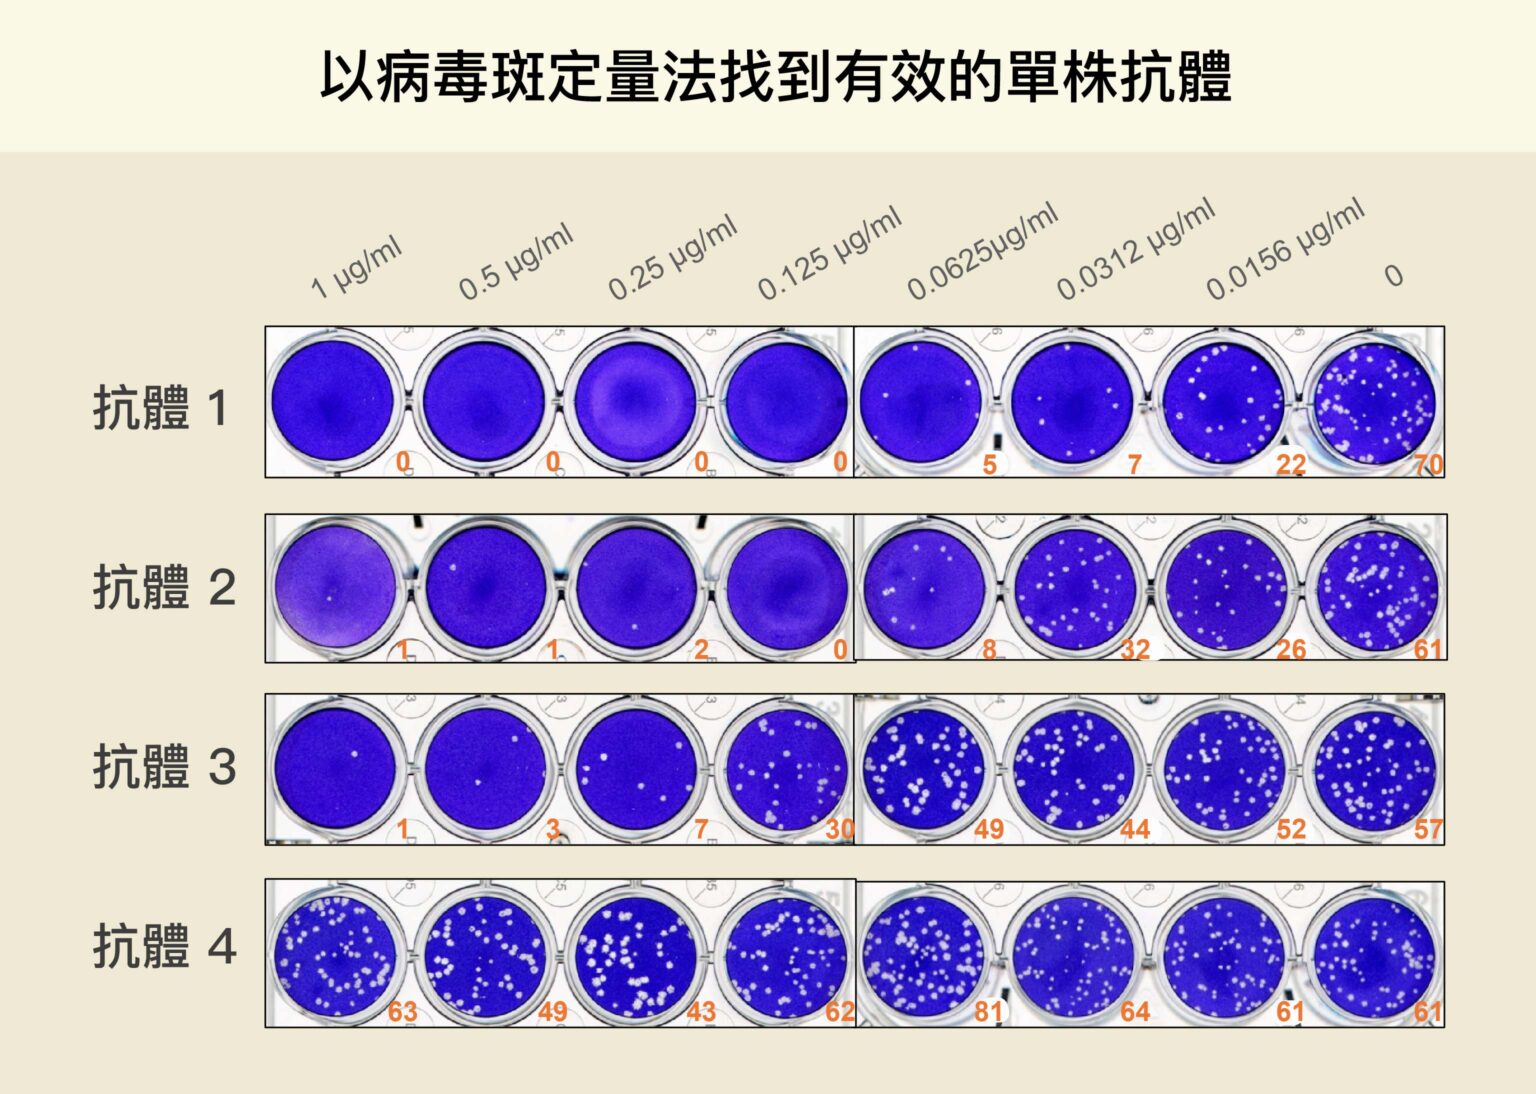 每一行代表一種抗體的測試組，研究員在每個裝滿細胞的培養皿中，分別放入新冠病毒與稀釋後的抗體（上方橫軸為抗體濃度，越往右濃度越低），白點代表加入抗體後仍受到感染的細胞。從白點數量可知，第一種抗體中和新冠病毒的能力最好，細胞受到感染的機會最小。圖│林宜玲